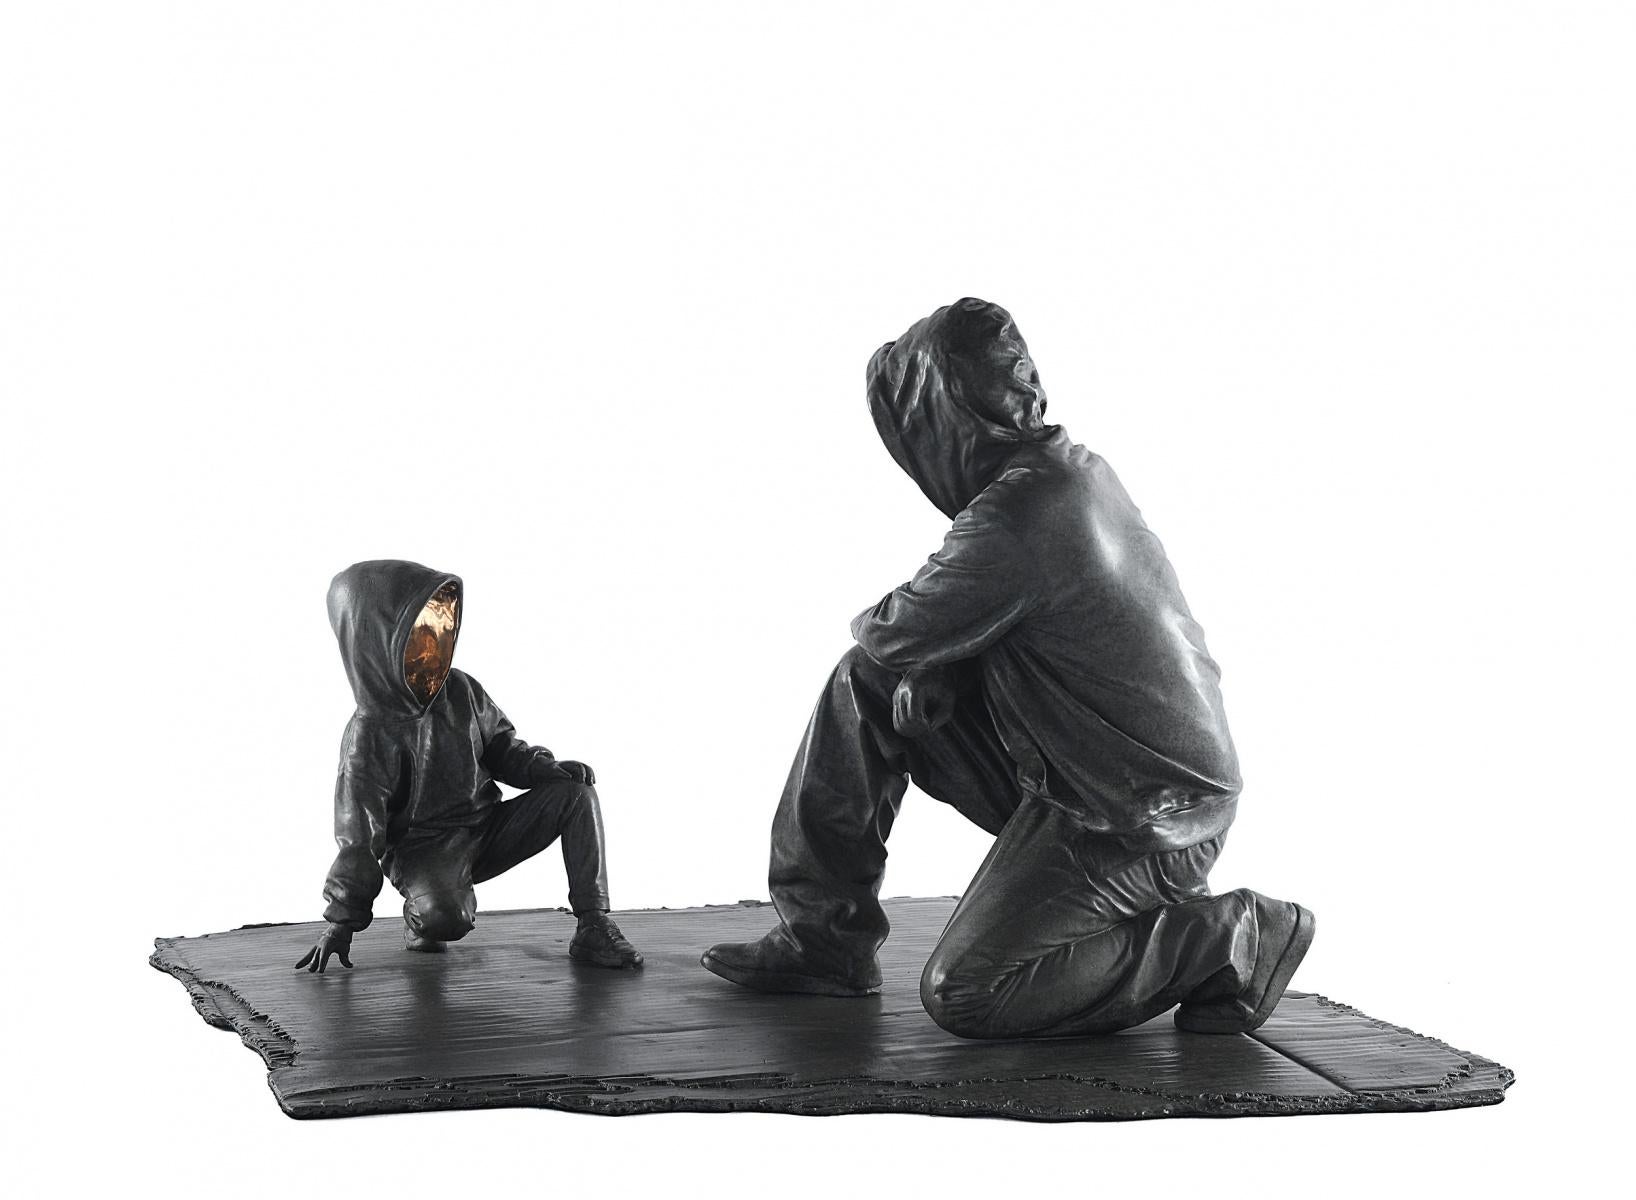 "Dear Thedodsia" Bronze-Skulptur 13 x 15 x 13 Zoll Edition 3/8 von Huang Yulong

ÜBER DEN KÜNSTLER
Huang Yulong wurde 1983 in der Provinz Anhui, China, geboren. Im Jahr 2007 schloss er sein Studium am Jingdezhen Ceramic Institute in der Provinz